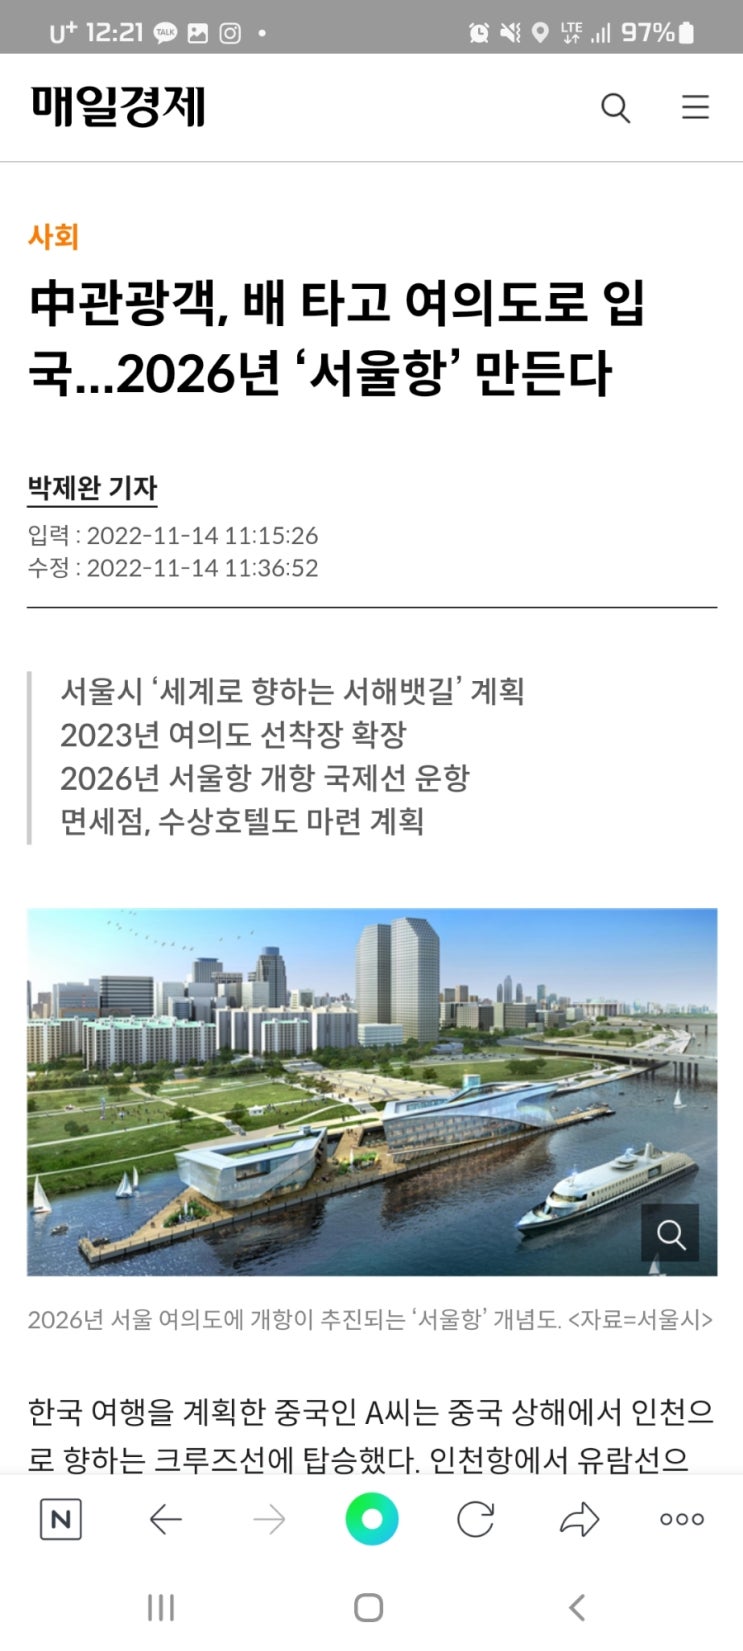 中관광객, 배 타고 여의도로 입국...2026년 ‘서울항’ 만든다